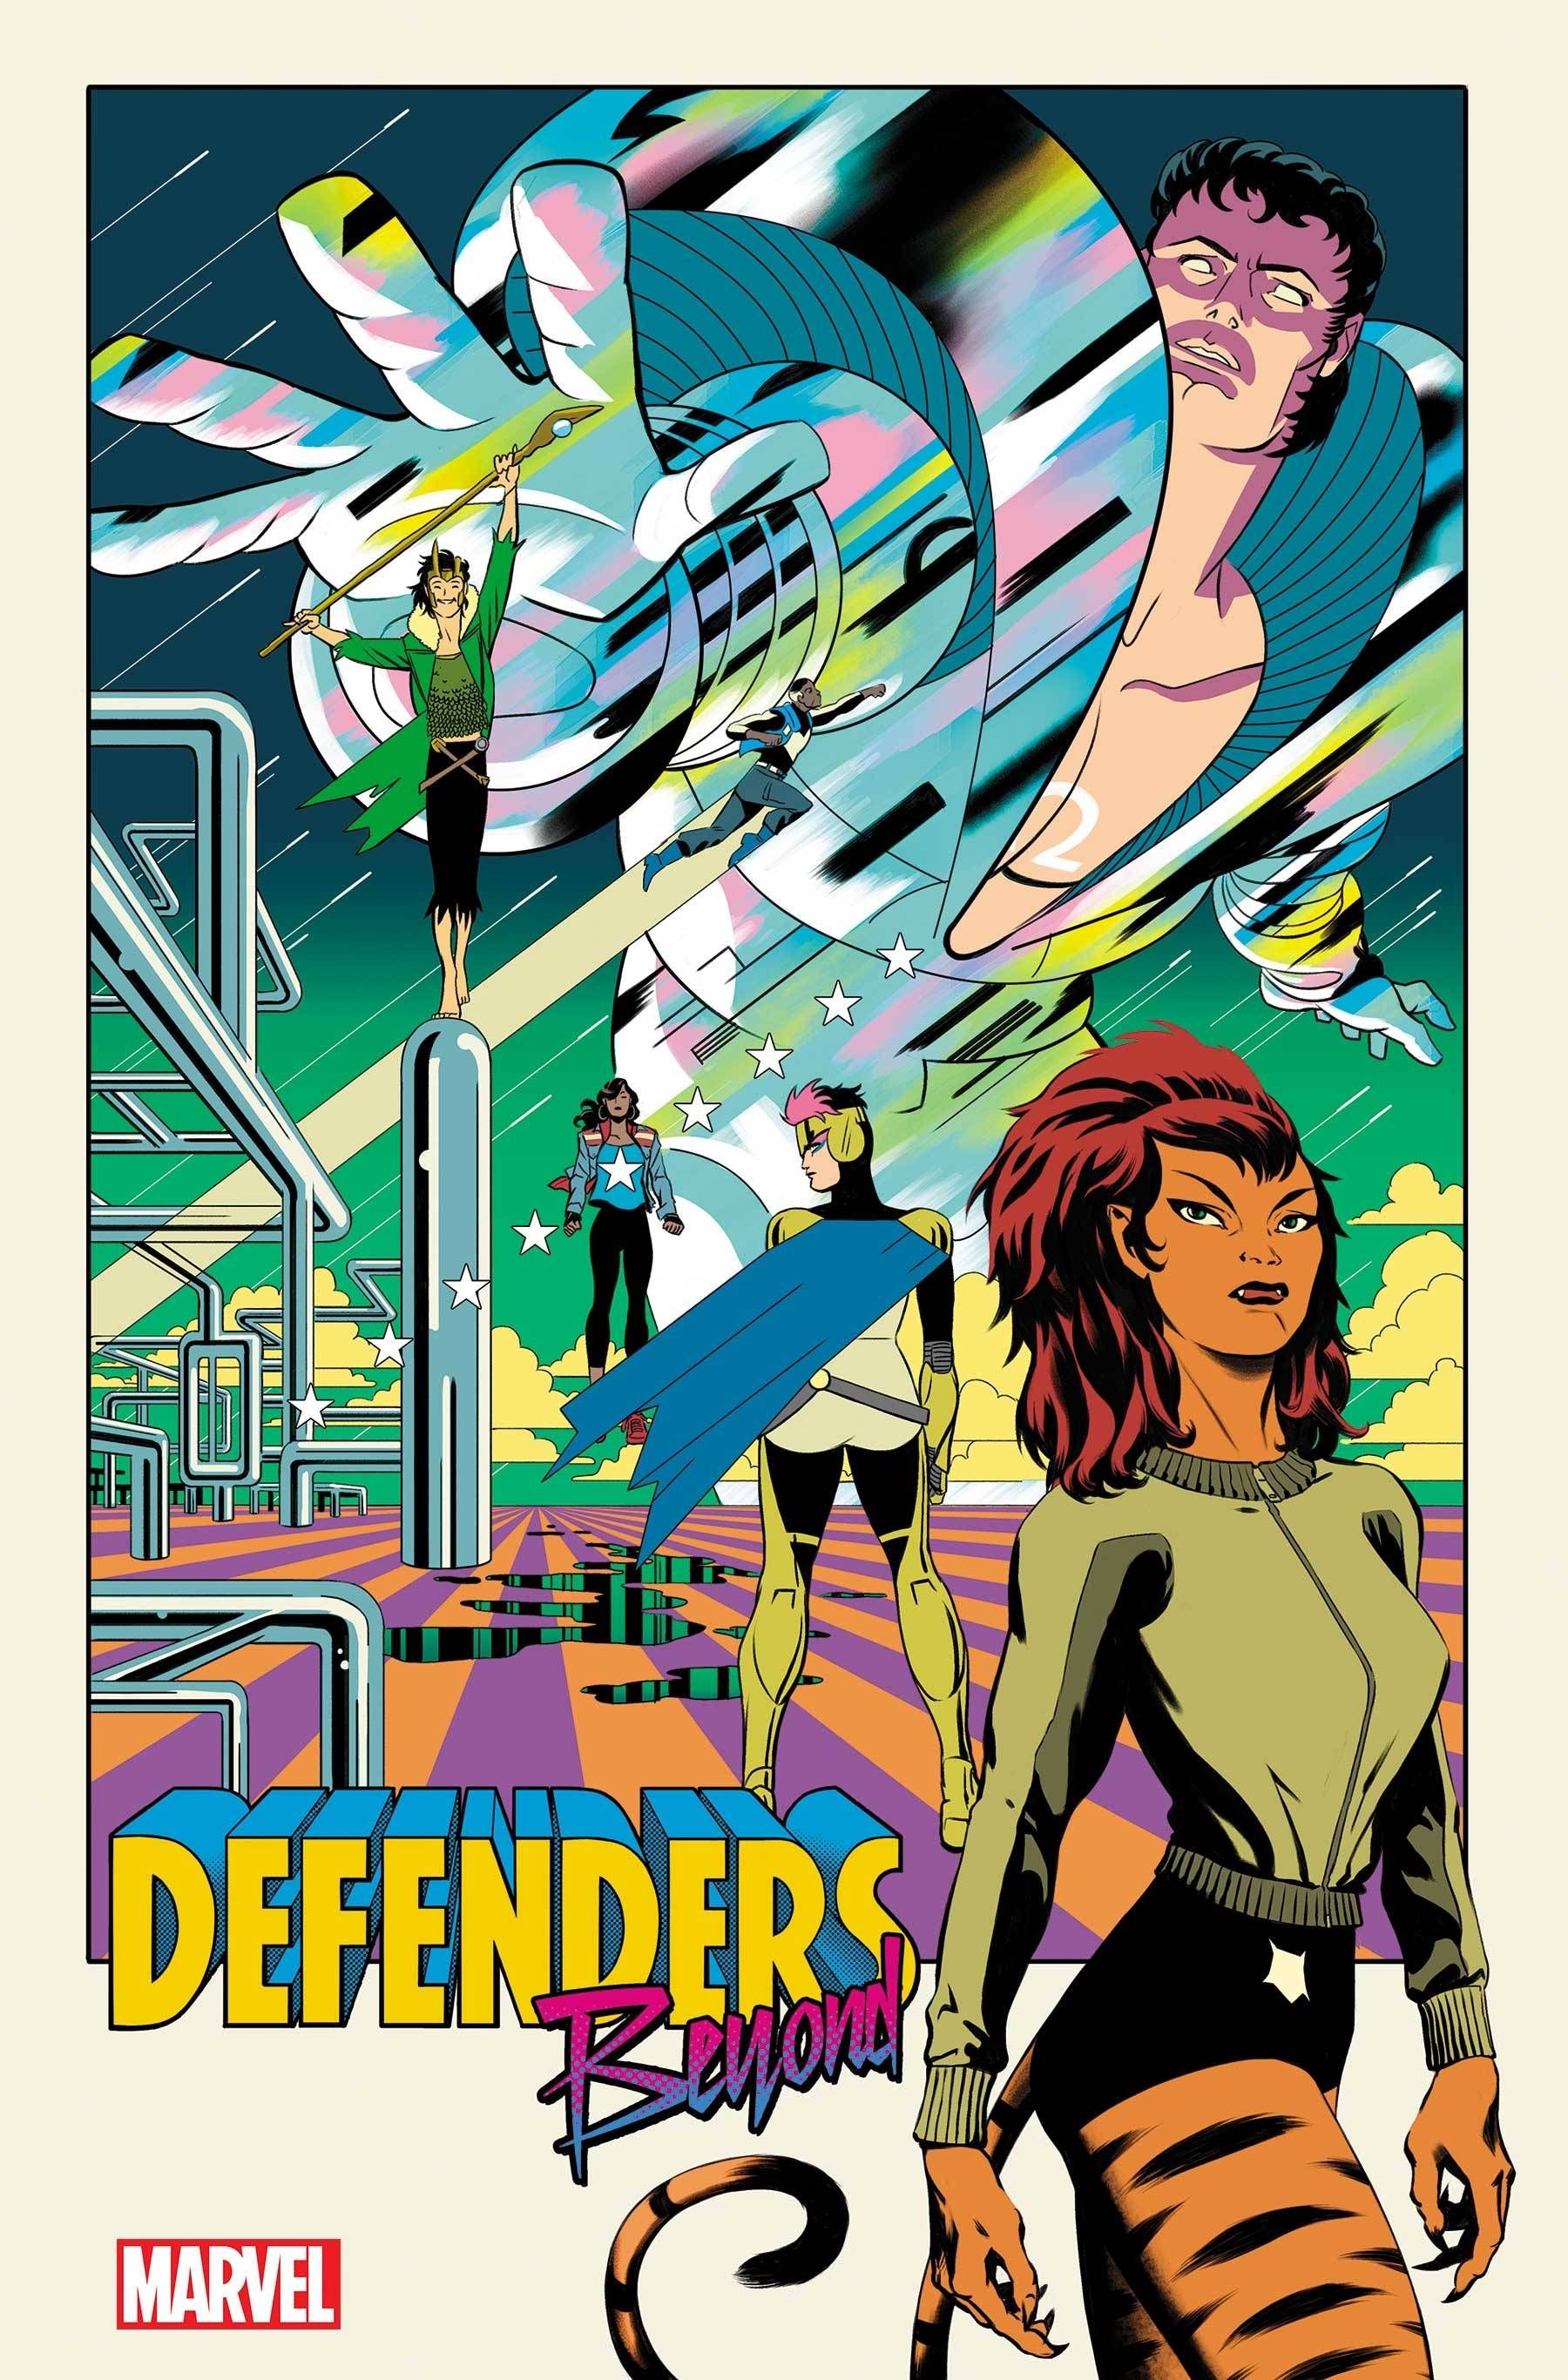 Defenders Beyond #2